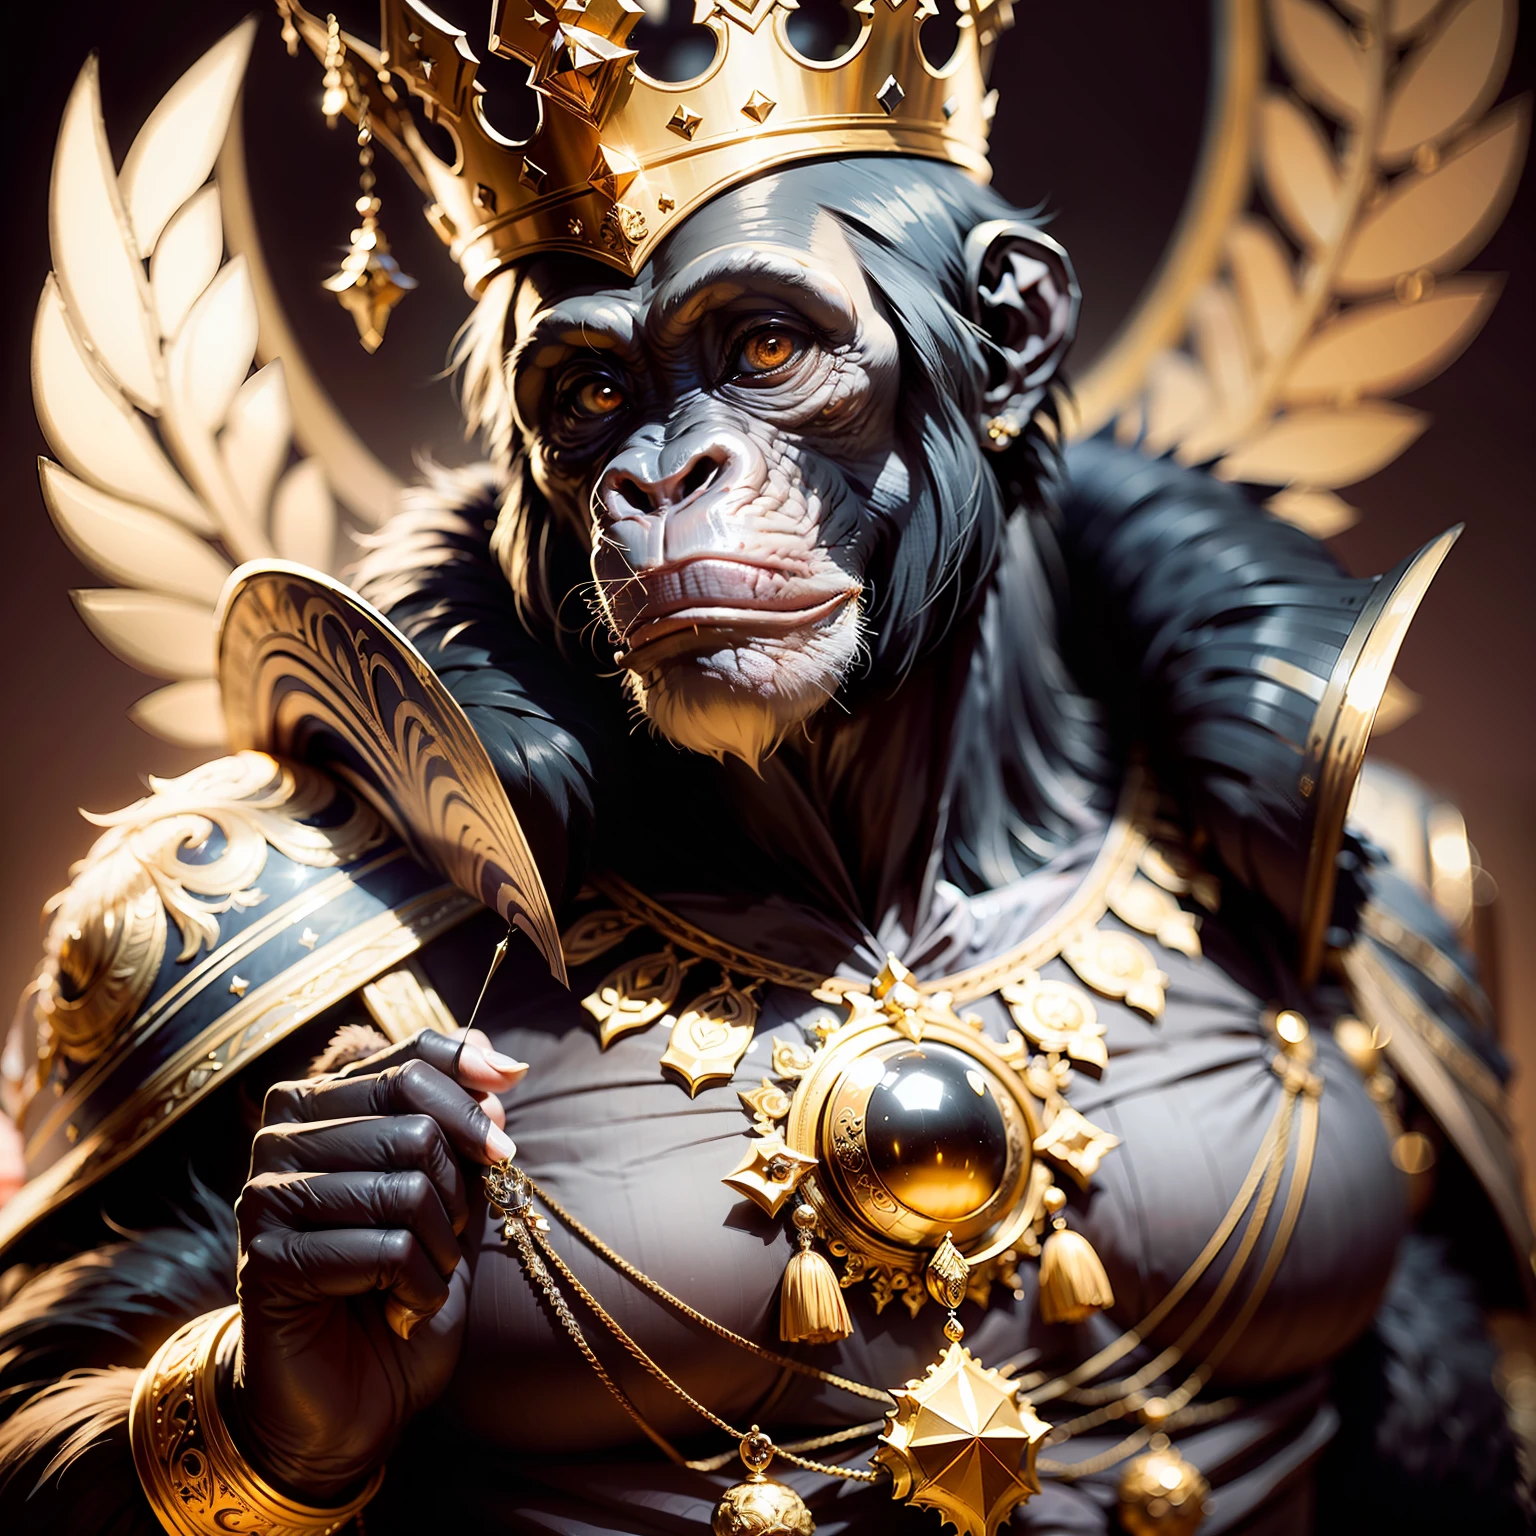 黑猩猩王,,((优雅的)),, 主权, 精神, 自信的, 配有皇冠和精致的道具, 黑色背景, 面对镜头,, 杰作,,((杰作))